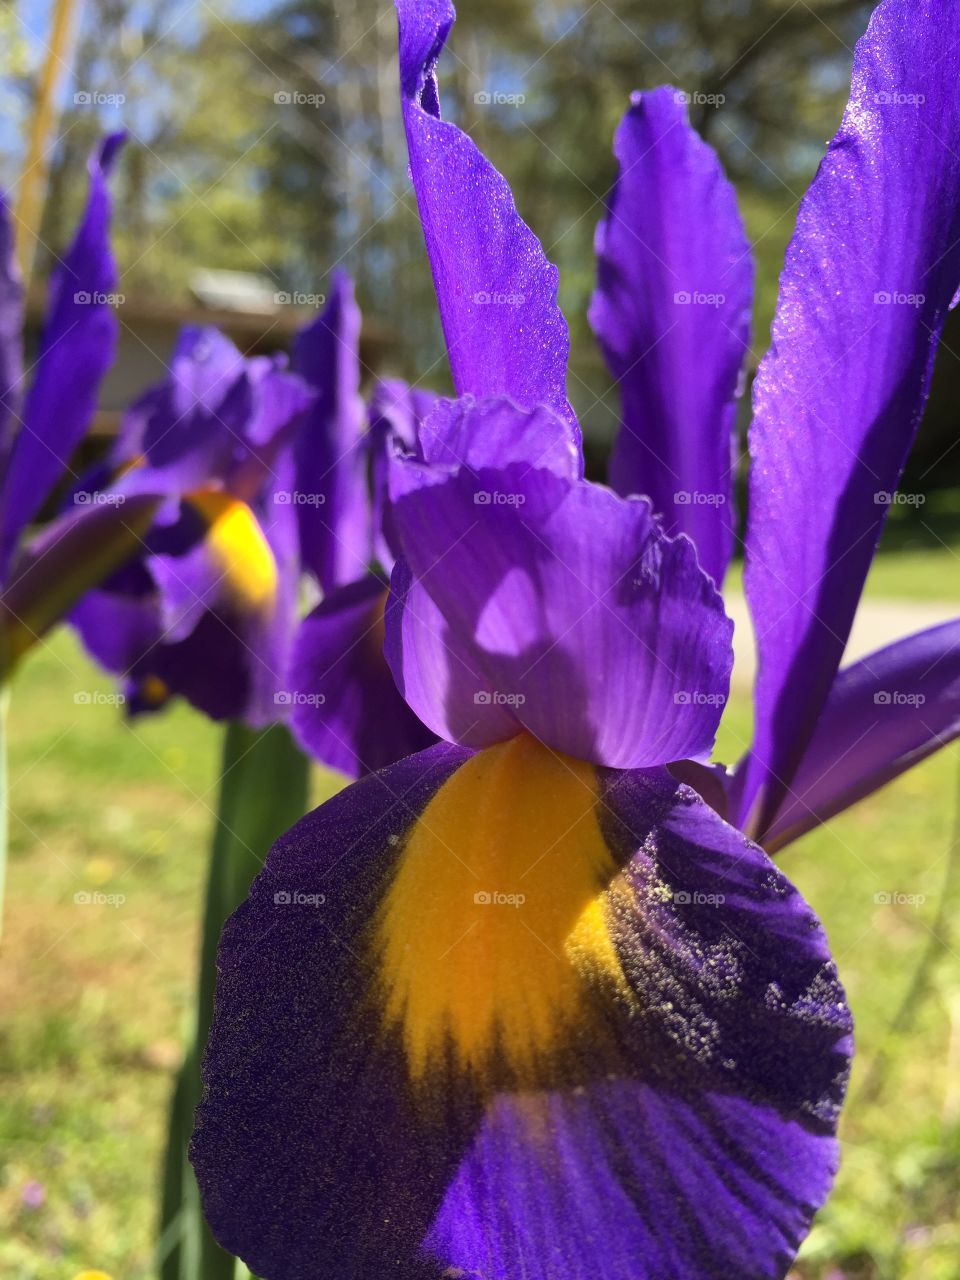 Royal purple iris 